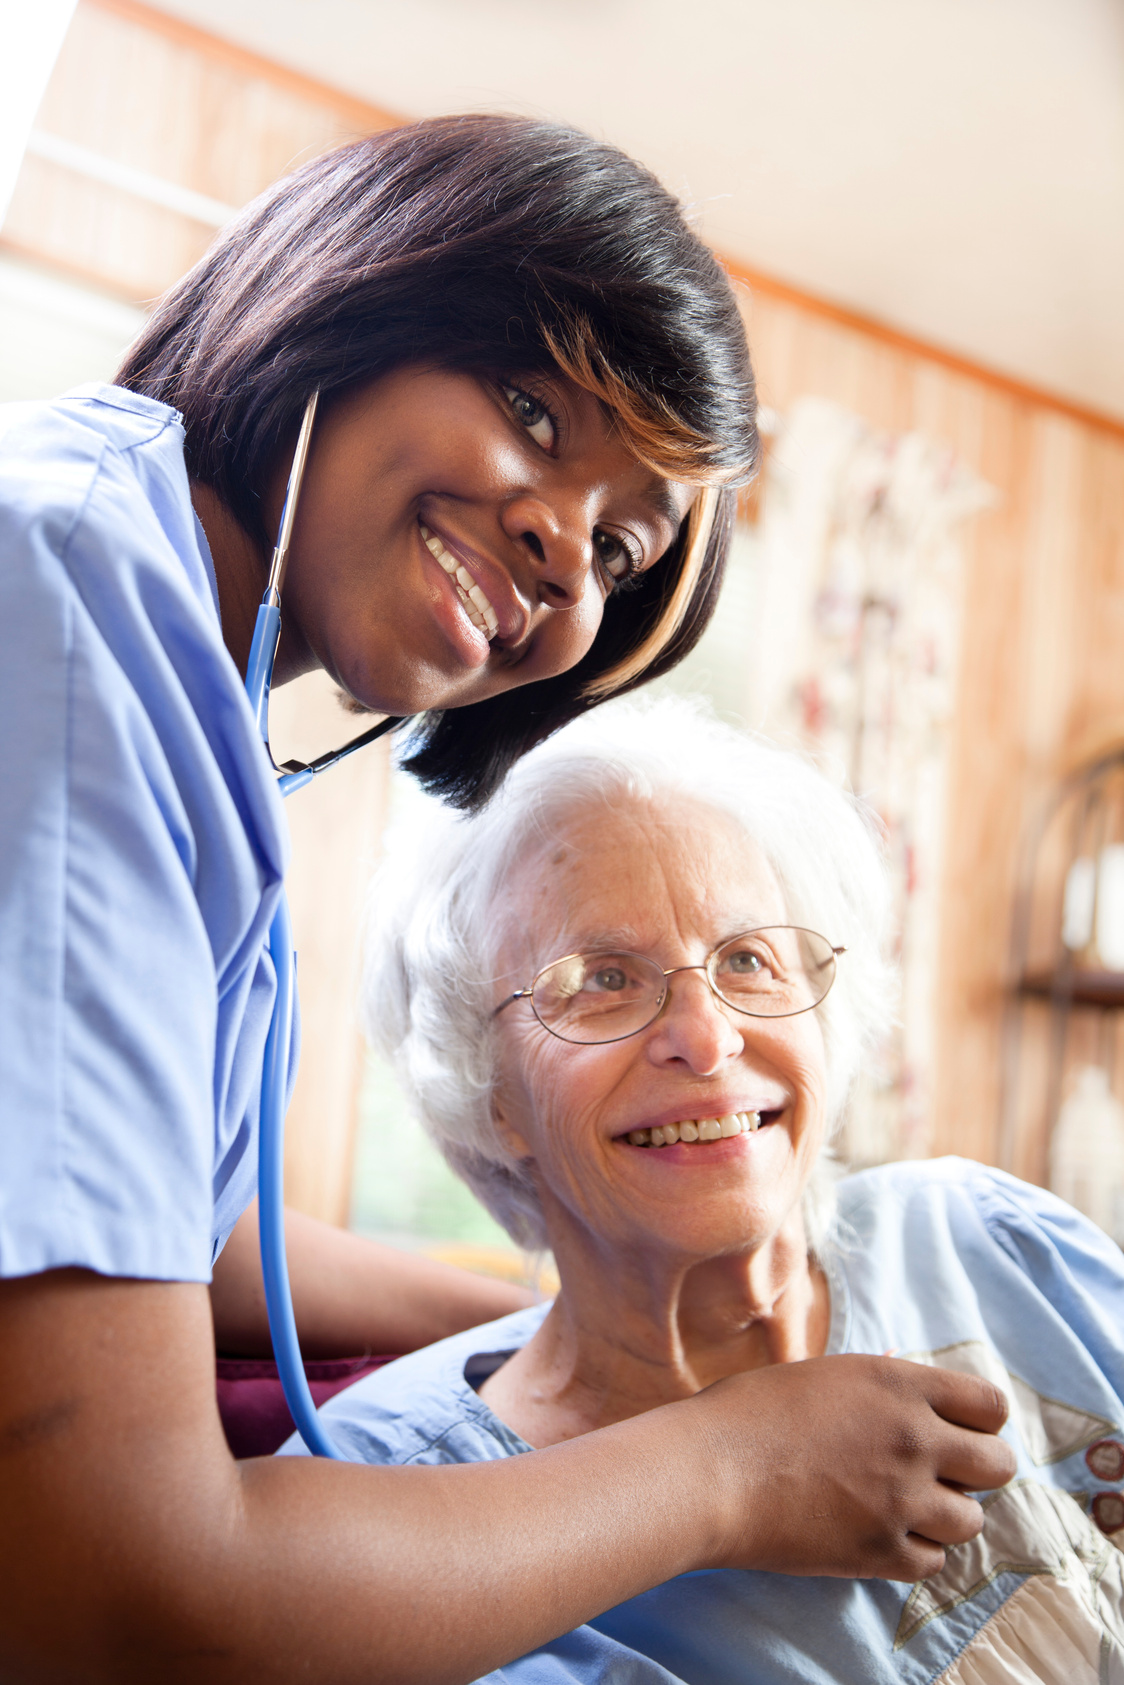 Healthcare: Home health nurse examines senior patient.